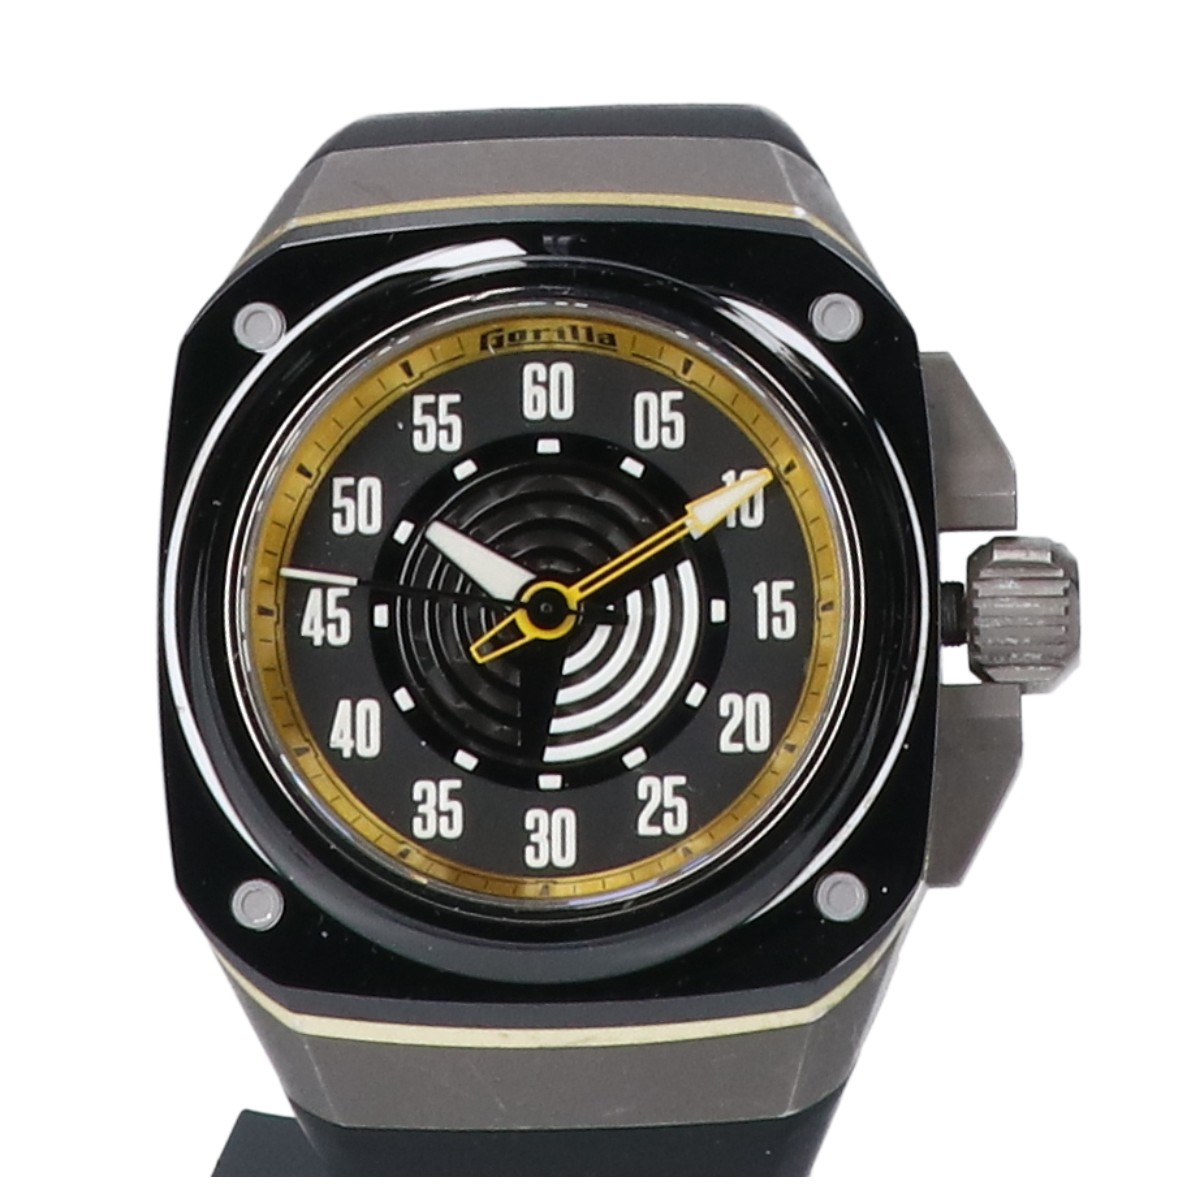 ゴリラウォッチのFBY10.0.131 ファストバック スティンガー・イエロー 自動巻き 腕時計の買取実績です。